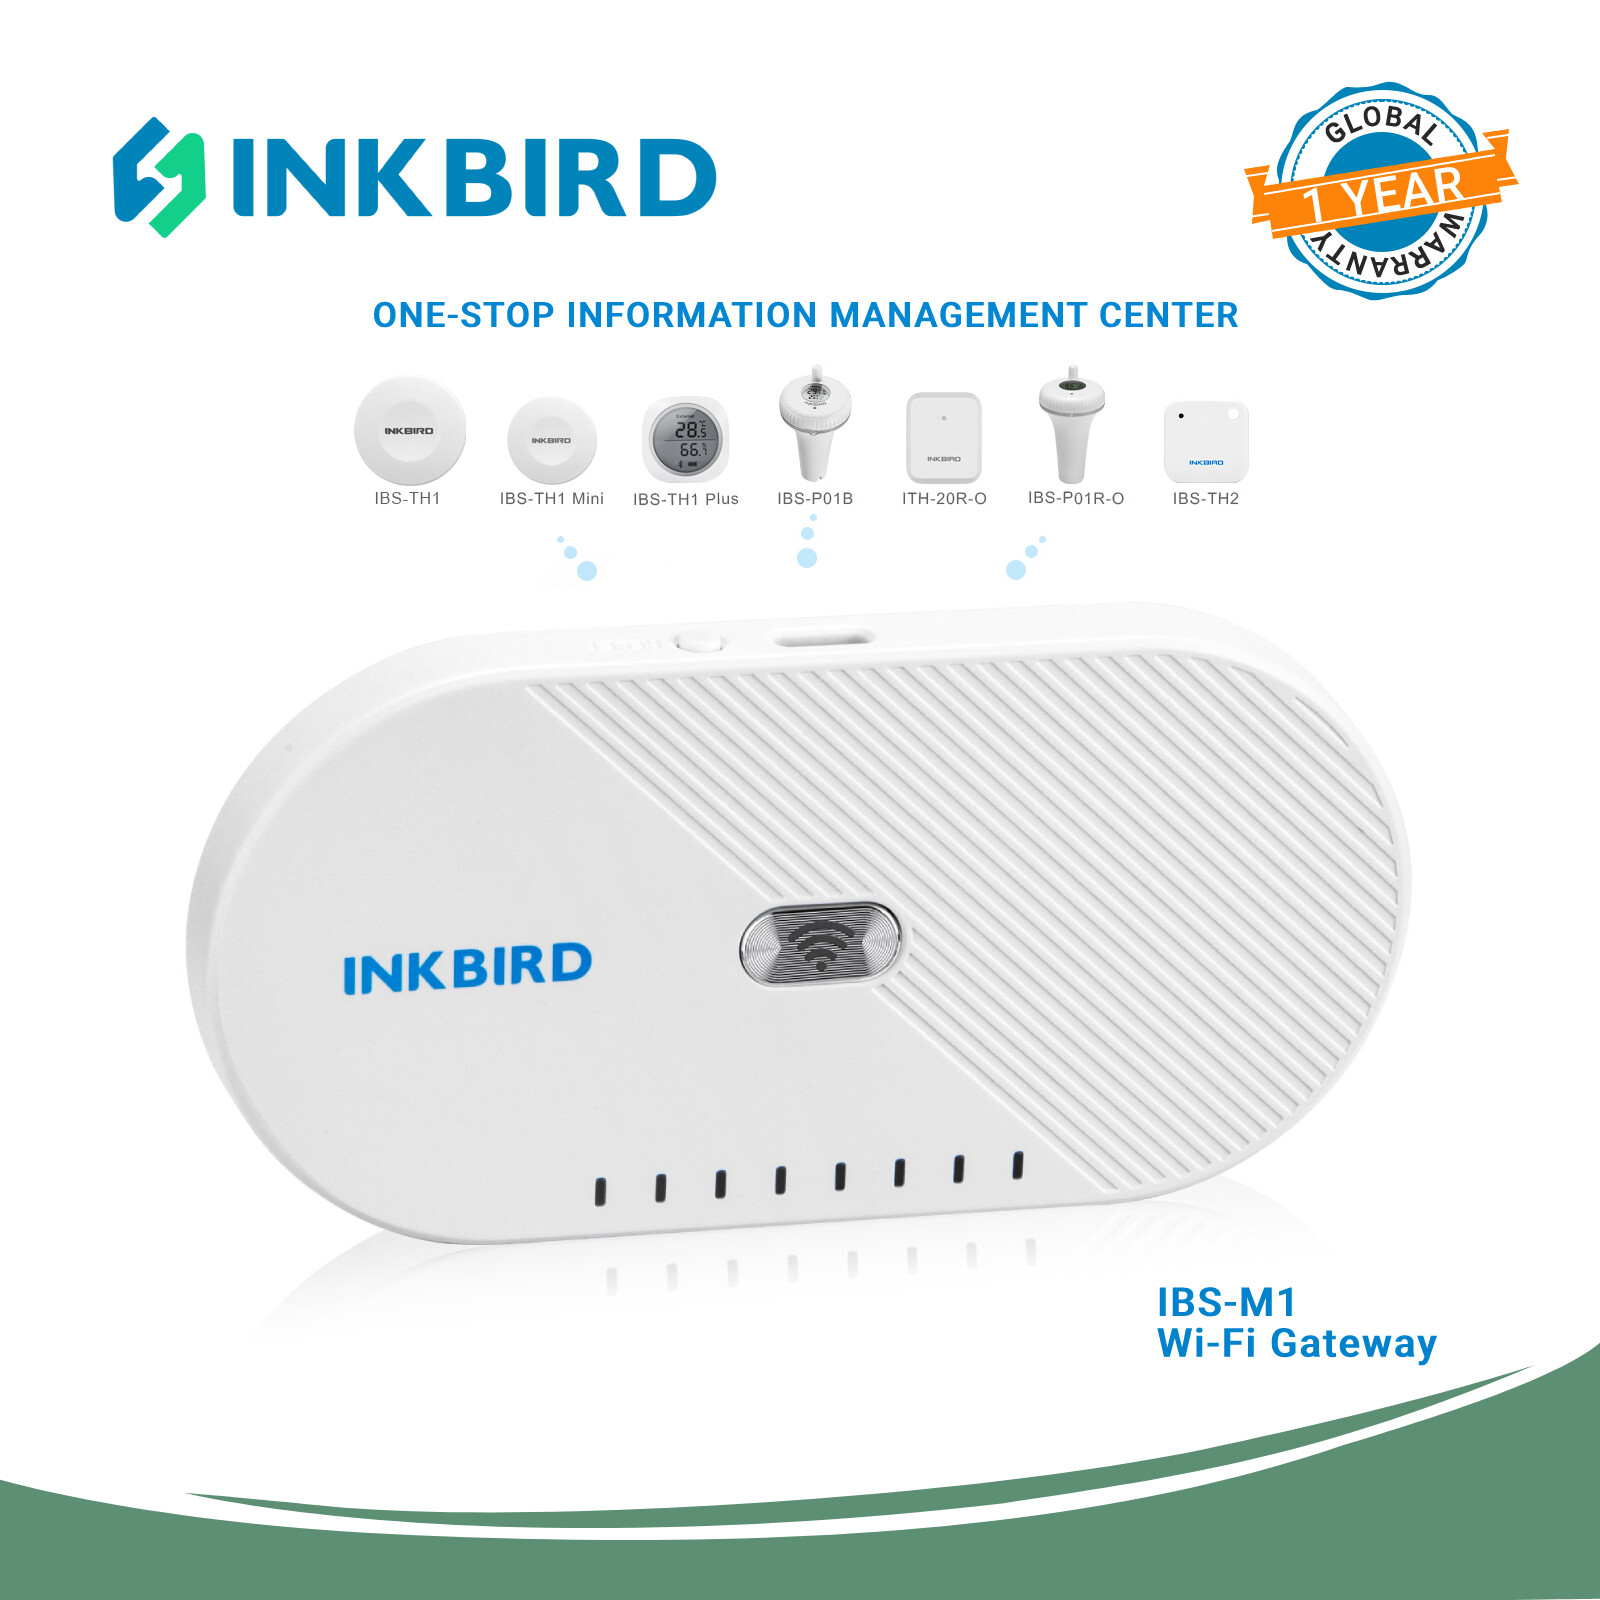 INKBIRD Wi-Fi Gateway, IBS-M1 Wi-Fi Bridge, Gateway Smart Hub, Remotely  Control Bluetooth&Wireless Devices with INKBIRD PRO App, 2.4GHz Only